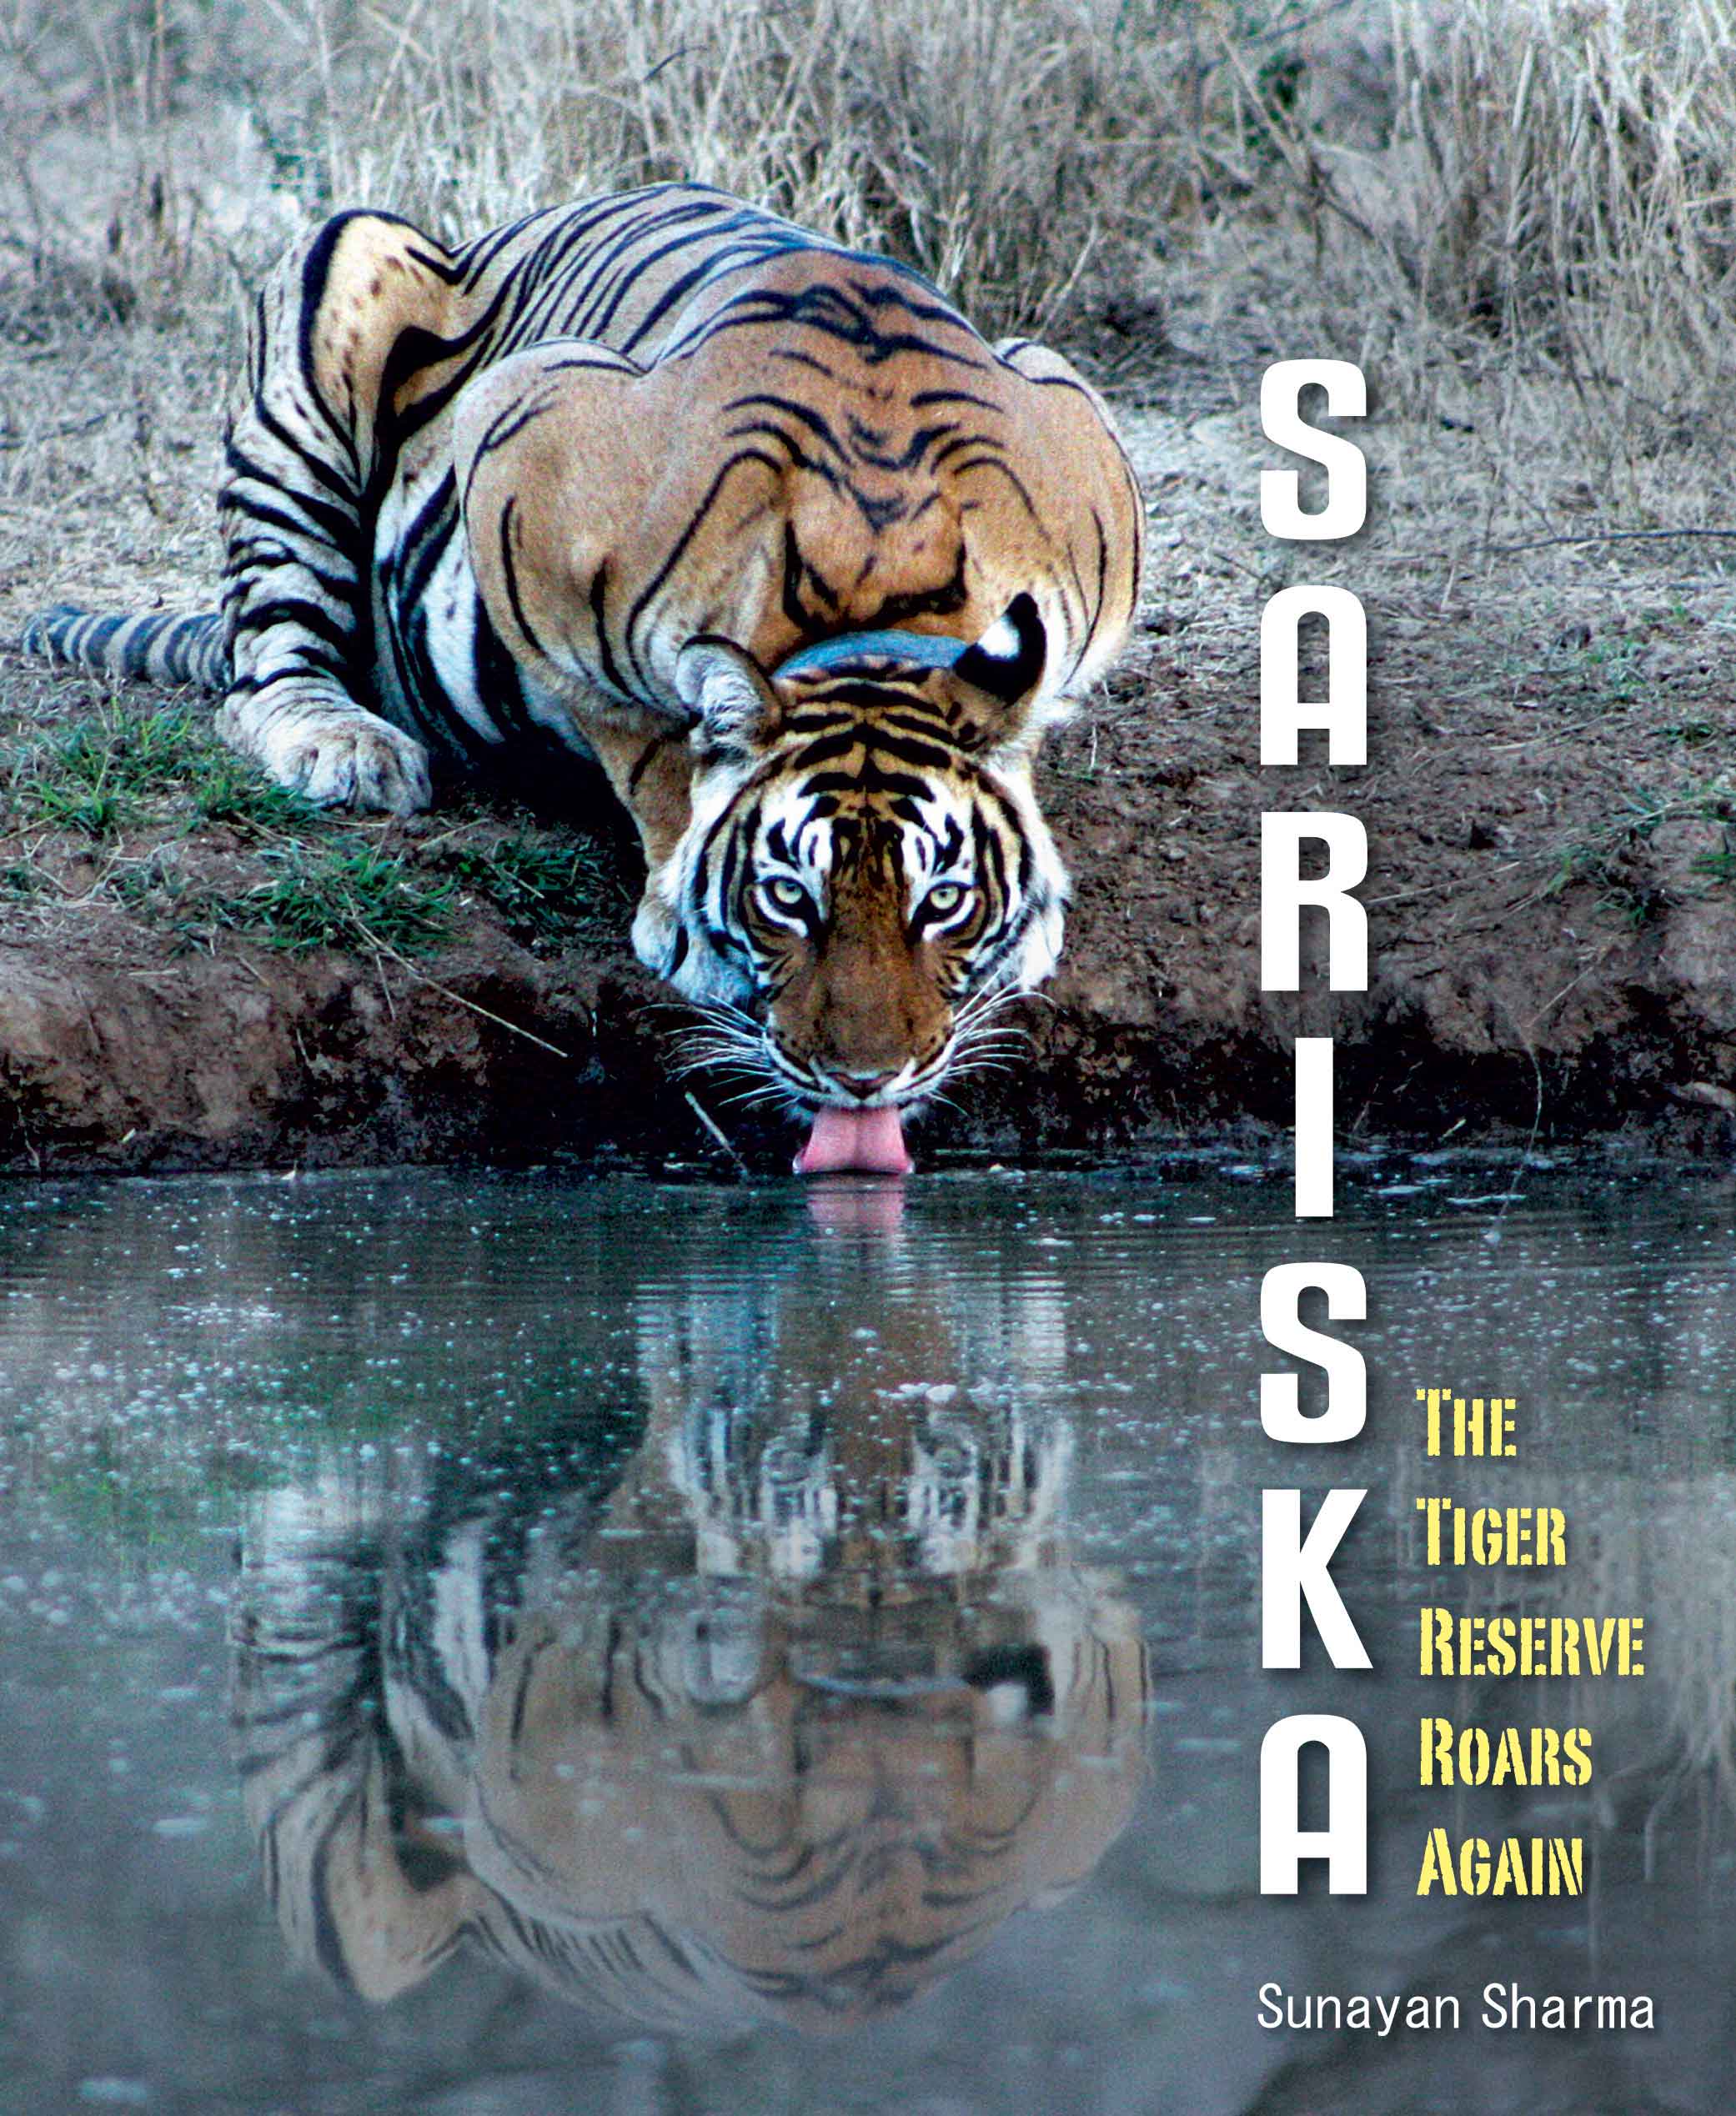 सरिस्का : बाघ संरक्षित क्षेत्र में फिर से गूँजी दहाड़ बुक्स